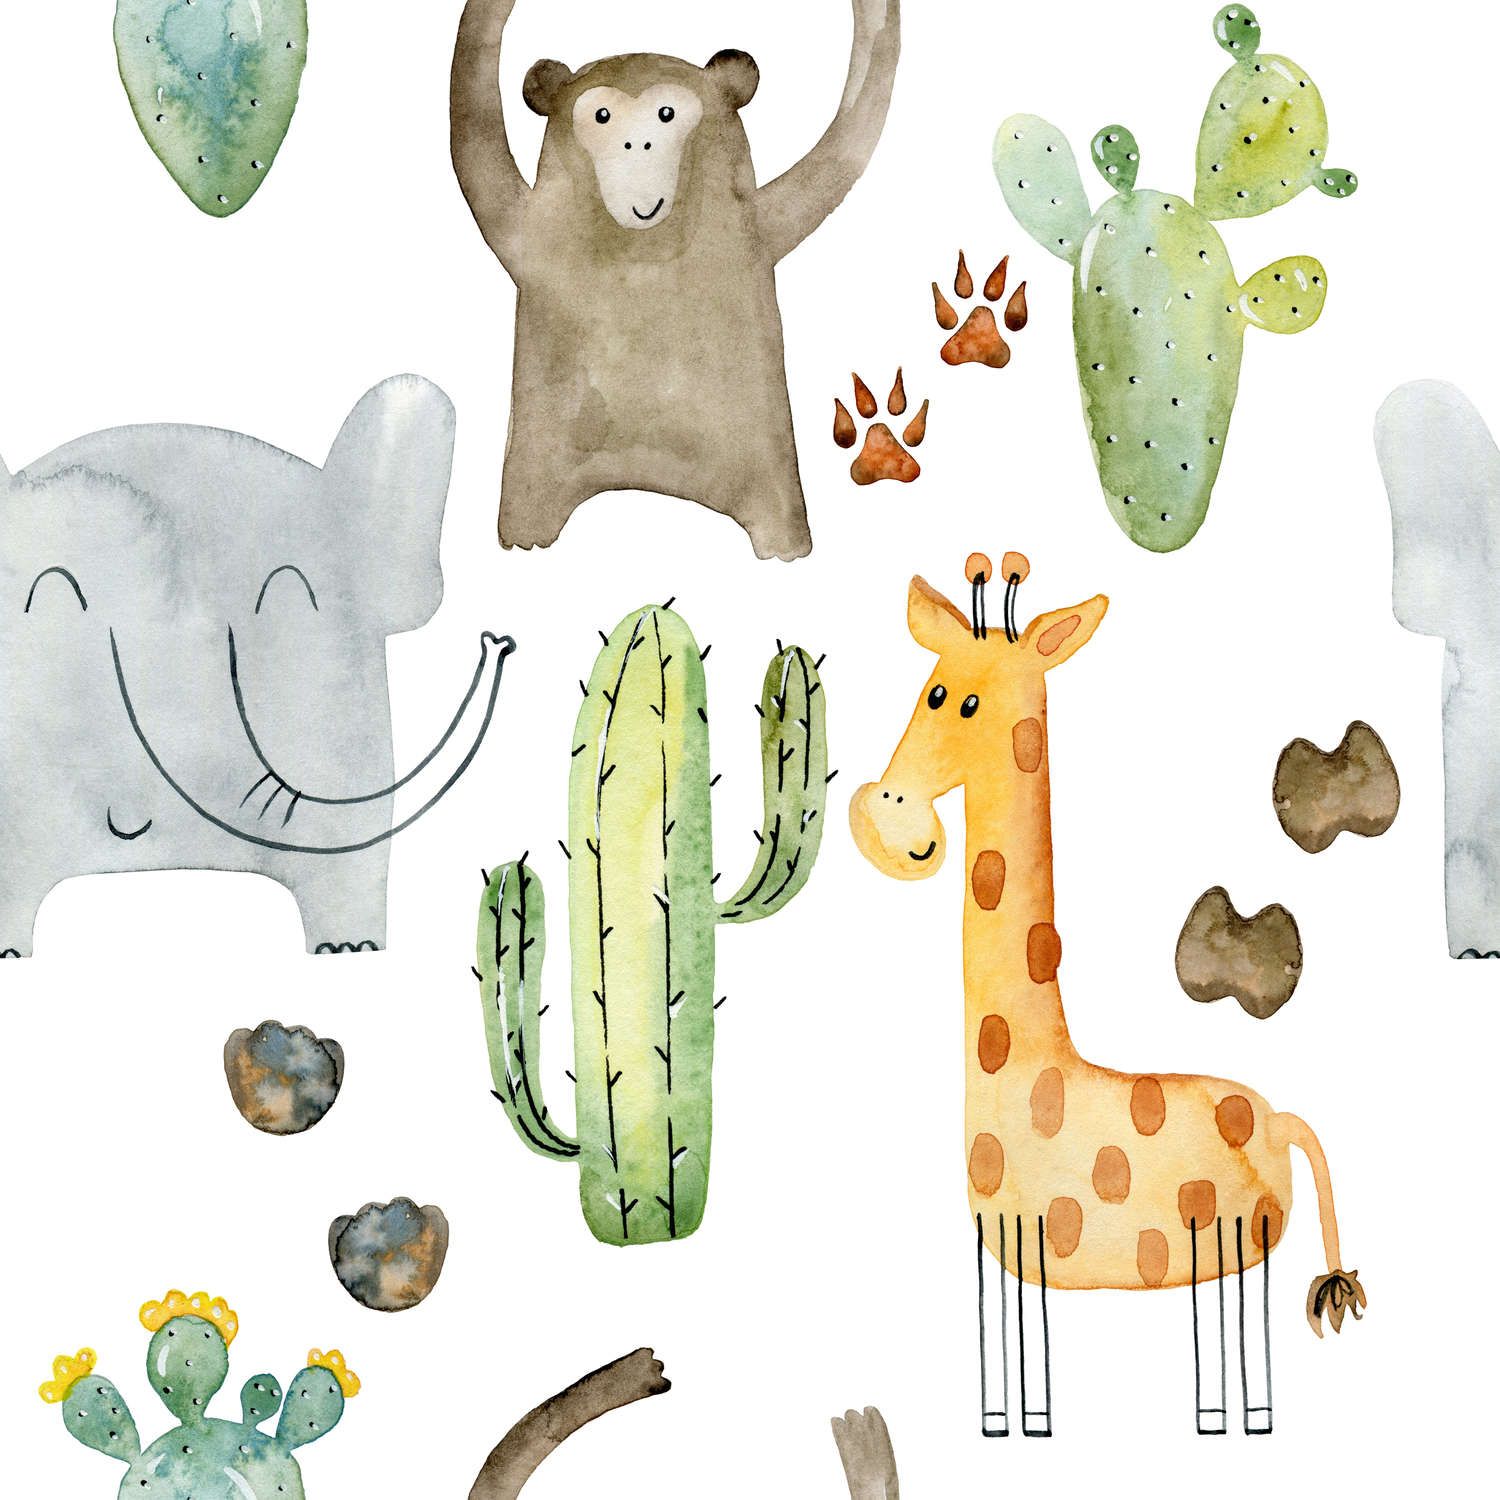             Animals and Cacti Wallpaper - Smooth & matt non-woven
        